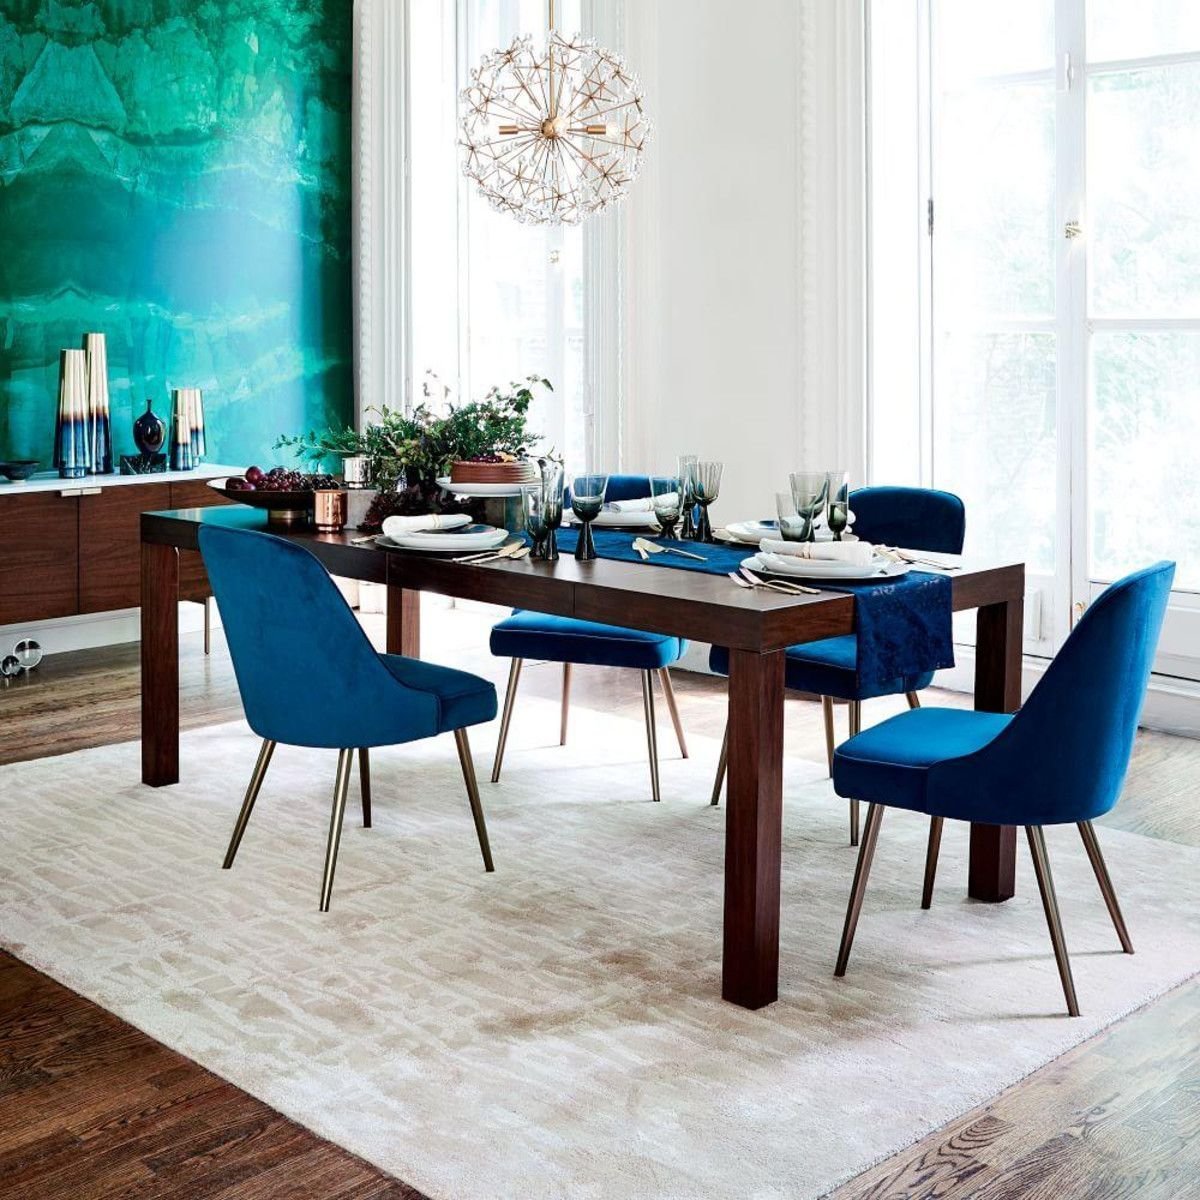 Мягкий стол стул. Круглый стол МИД сенчури. Кухня МИД сенчури синяя. Синие стулья в интерьере. Синие стулья в интерьере кухни.